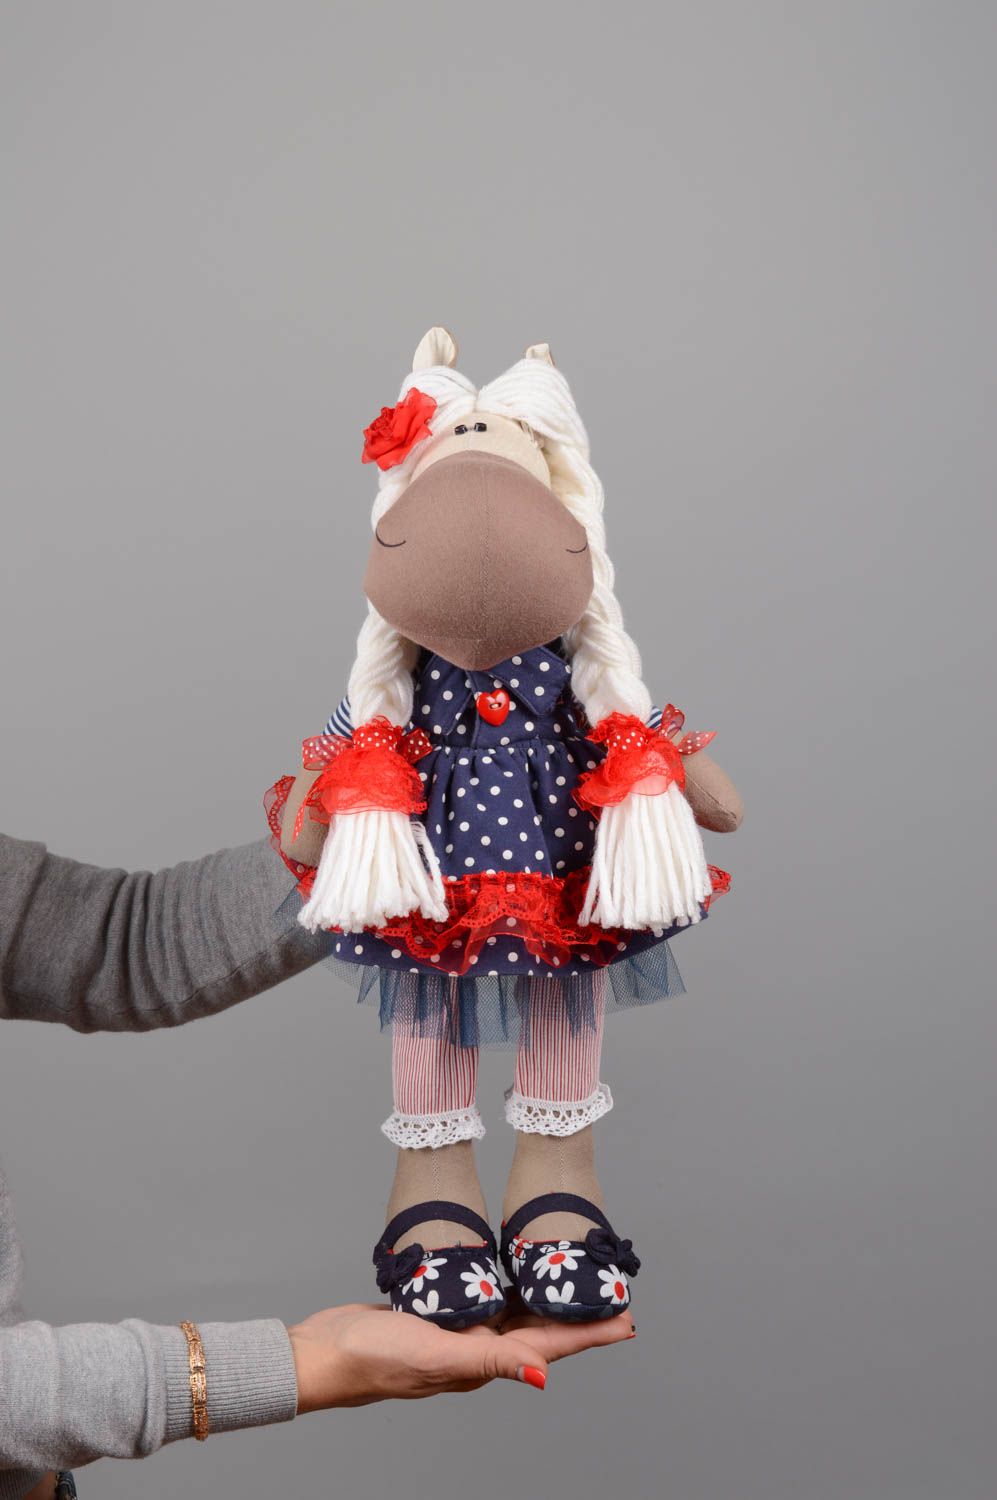 Textil Kuscheltier Pferd im Kleid grell schön modisch handmade für Kinder foto 5